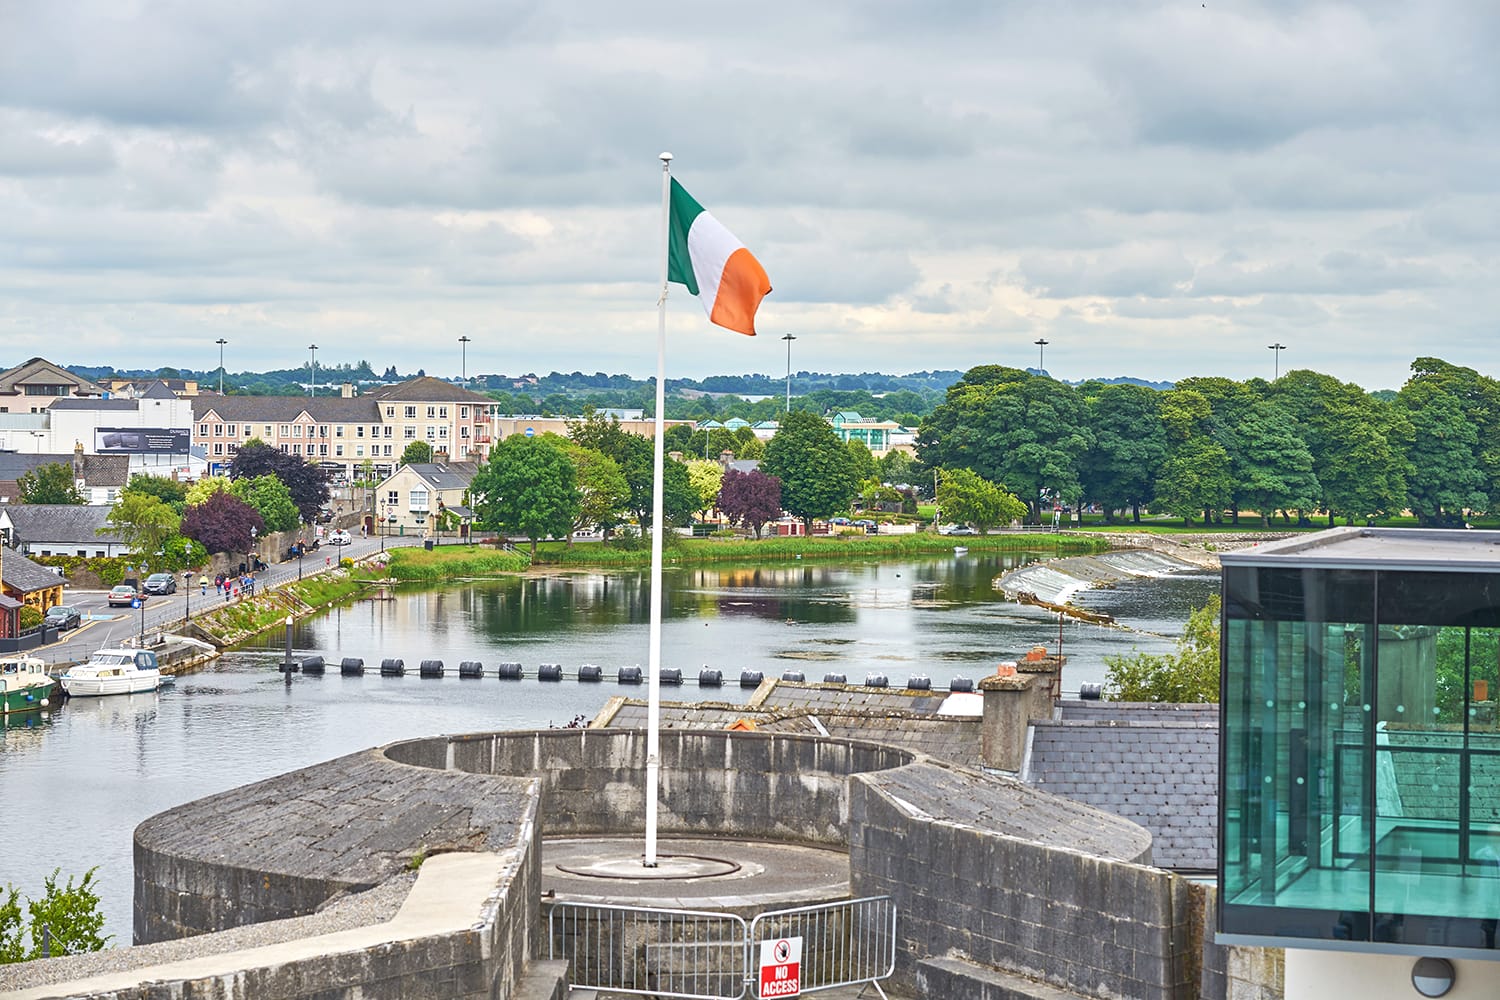 η εθνική σημαία της Ιρλανδίας που κυματίζει σε ένα κοντάρι σημαίας, σε έναν πύργο του Athlone Castle, Co. Westmeath, Ιρλανδία